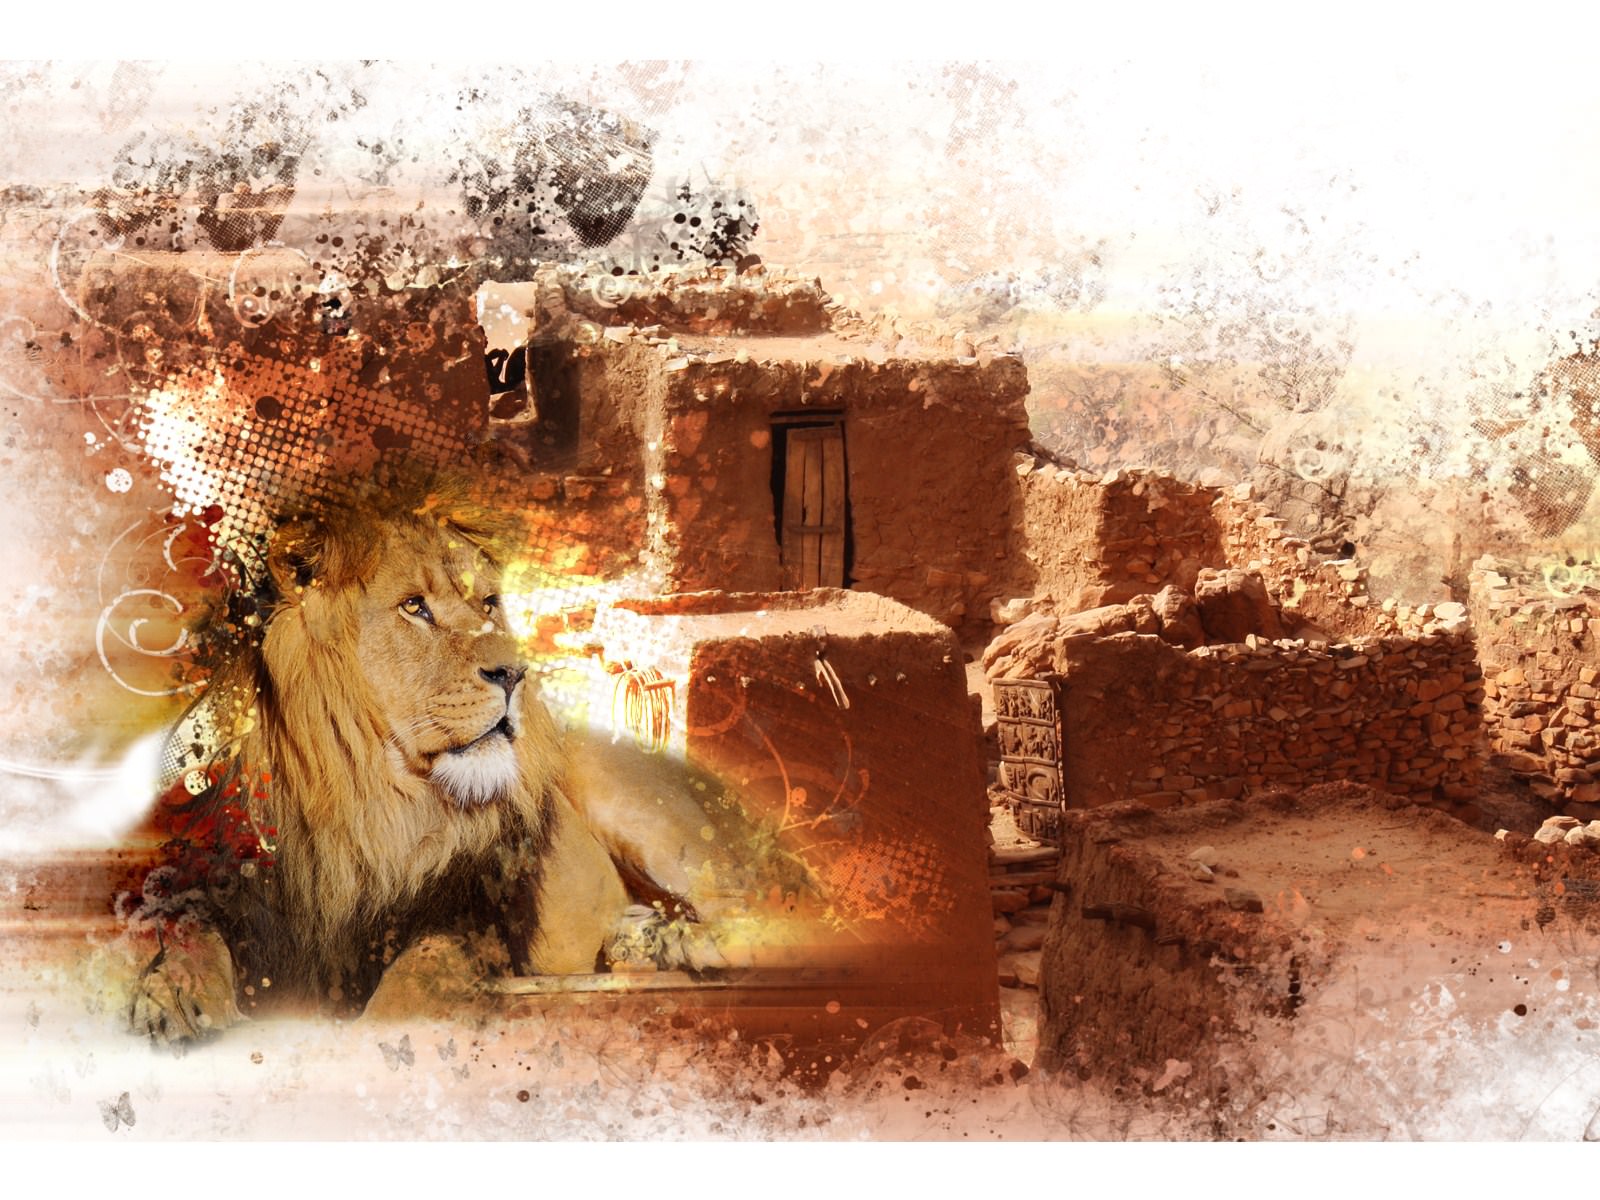 Lions Lion